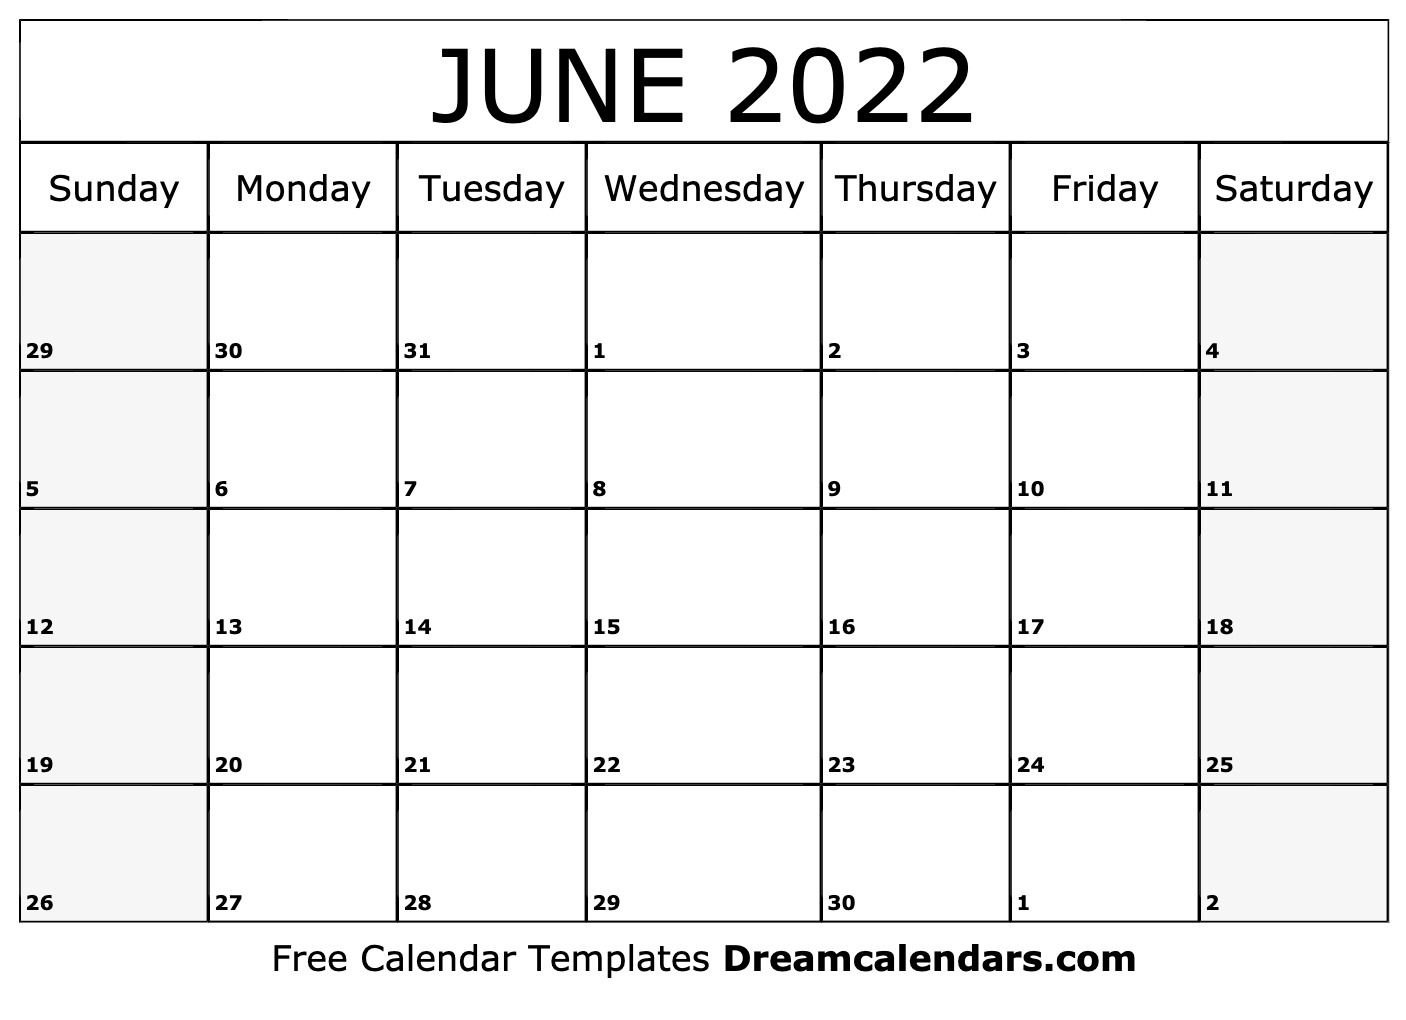 Get February 15 2022 Calendar